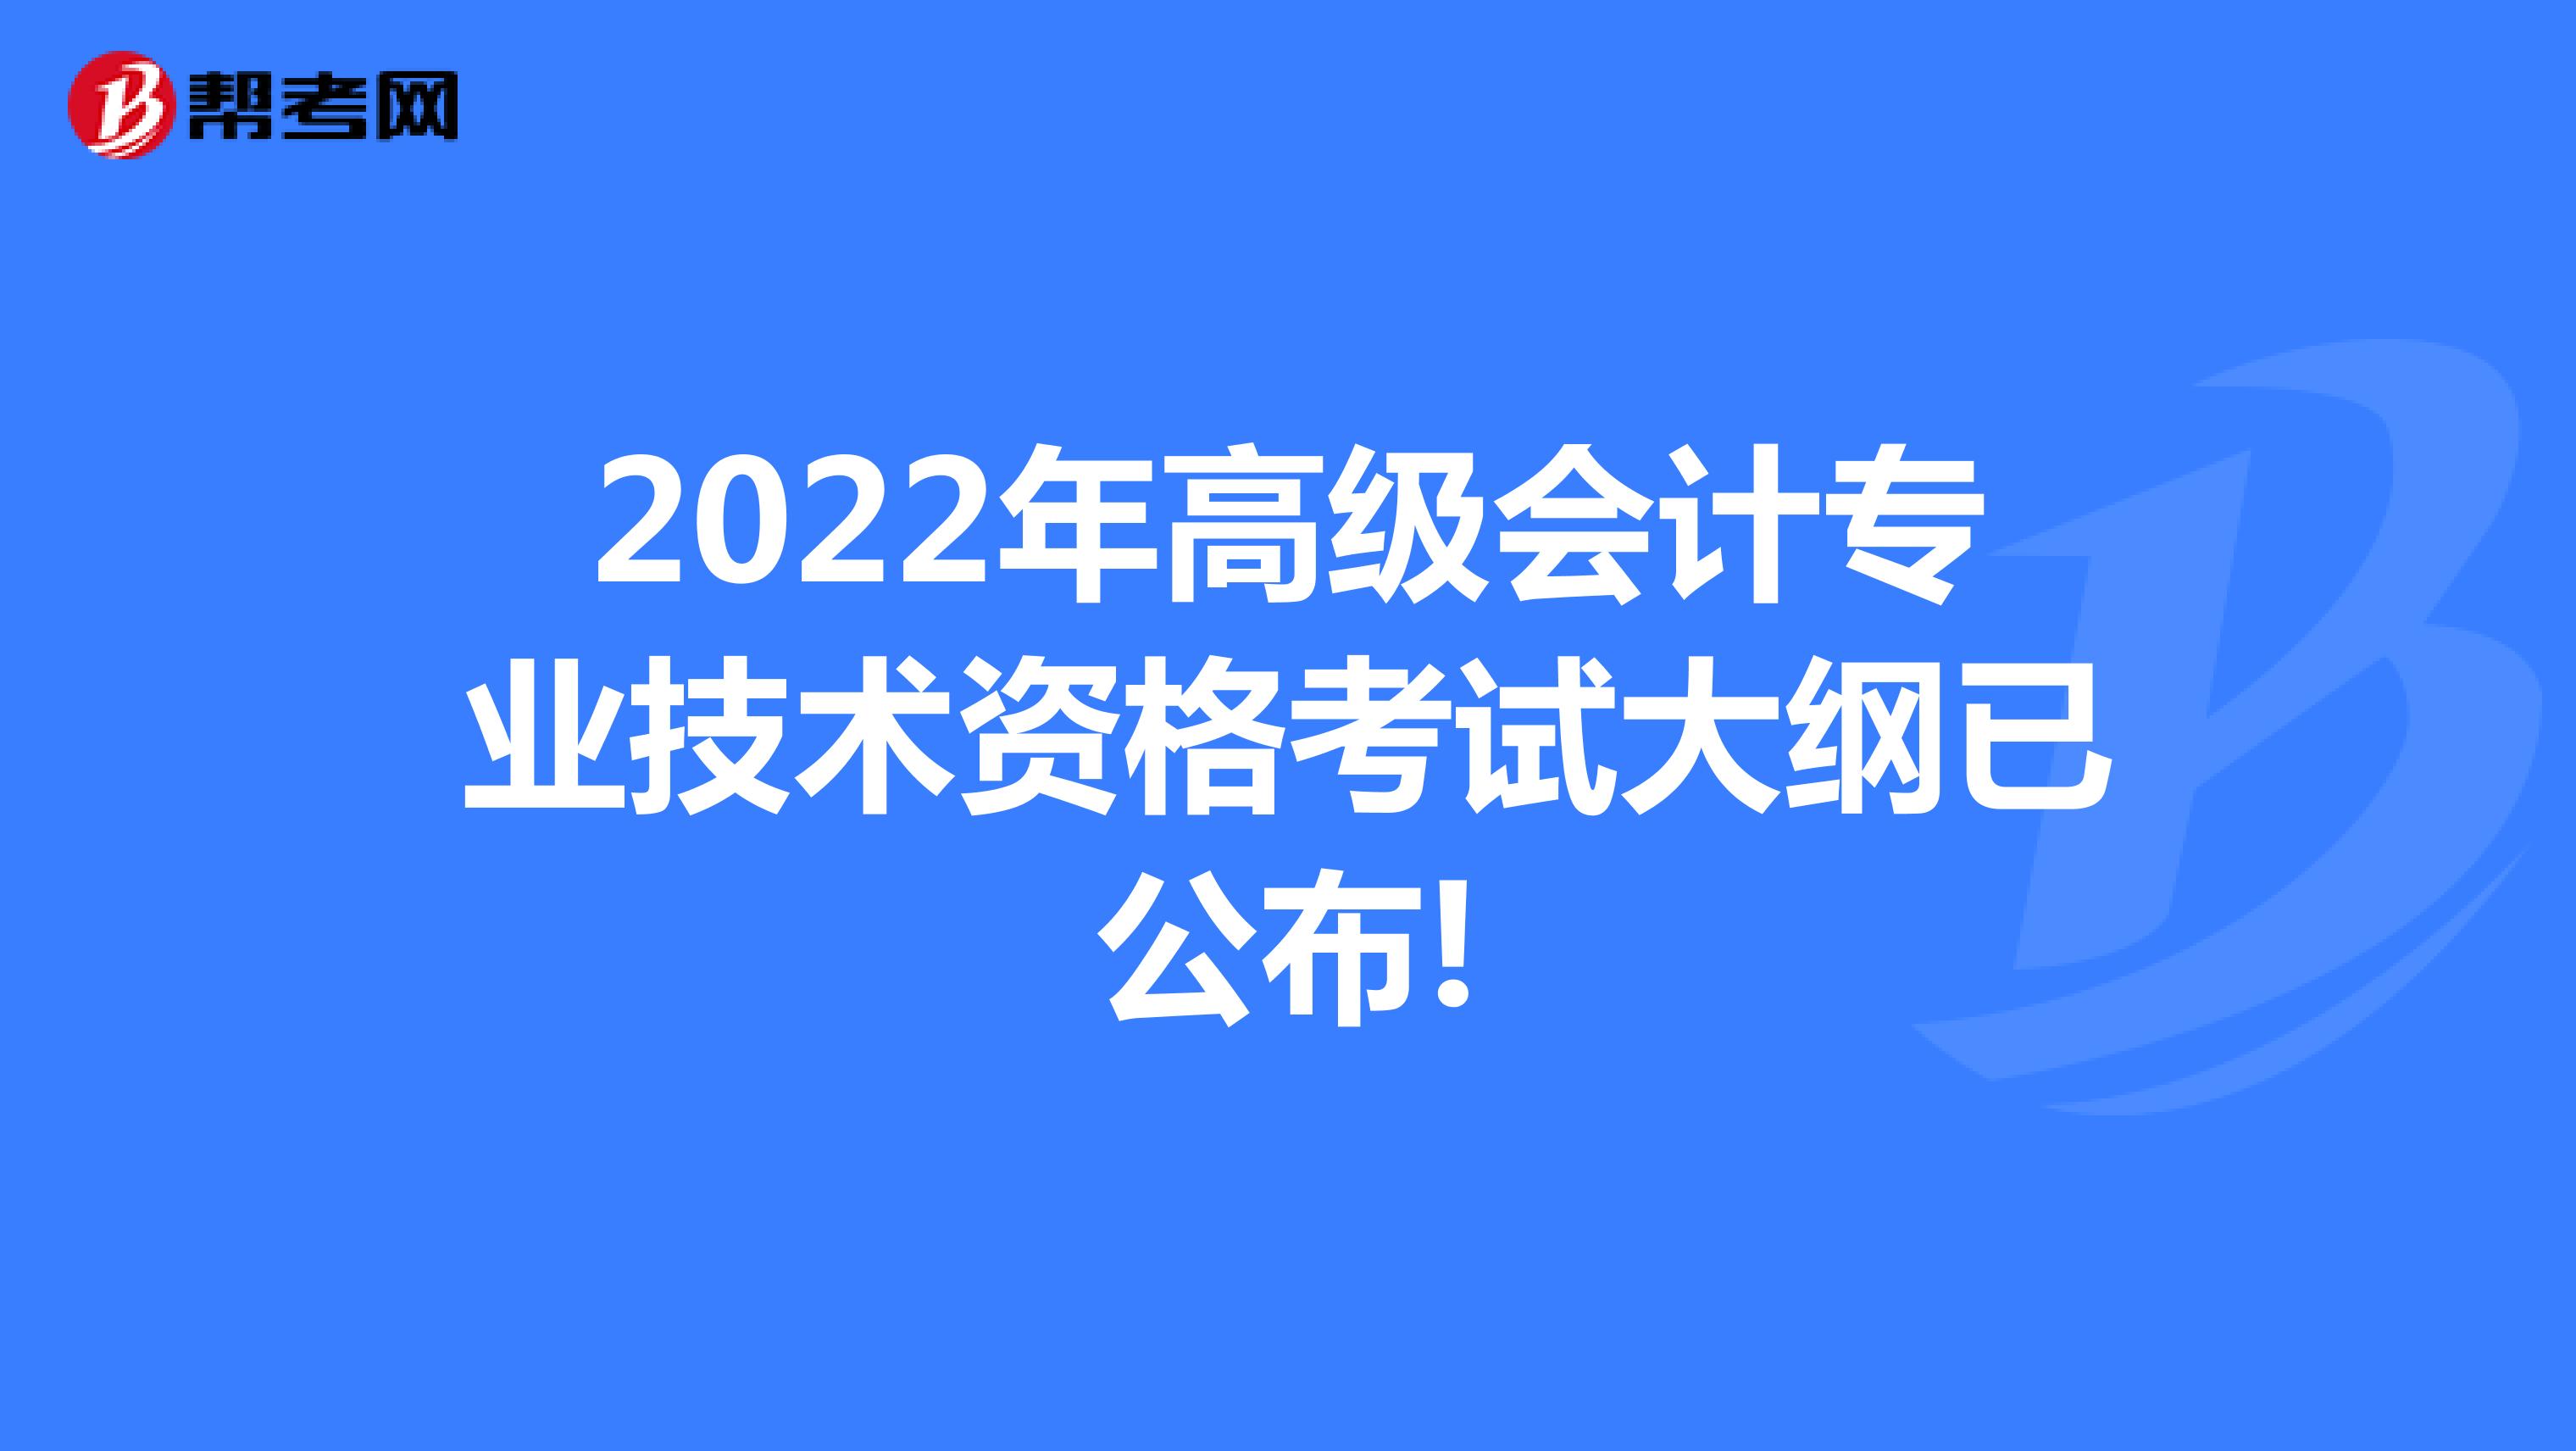 2022年高级会计专业技术资格考试大纲已公布!